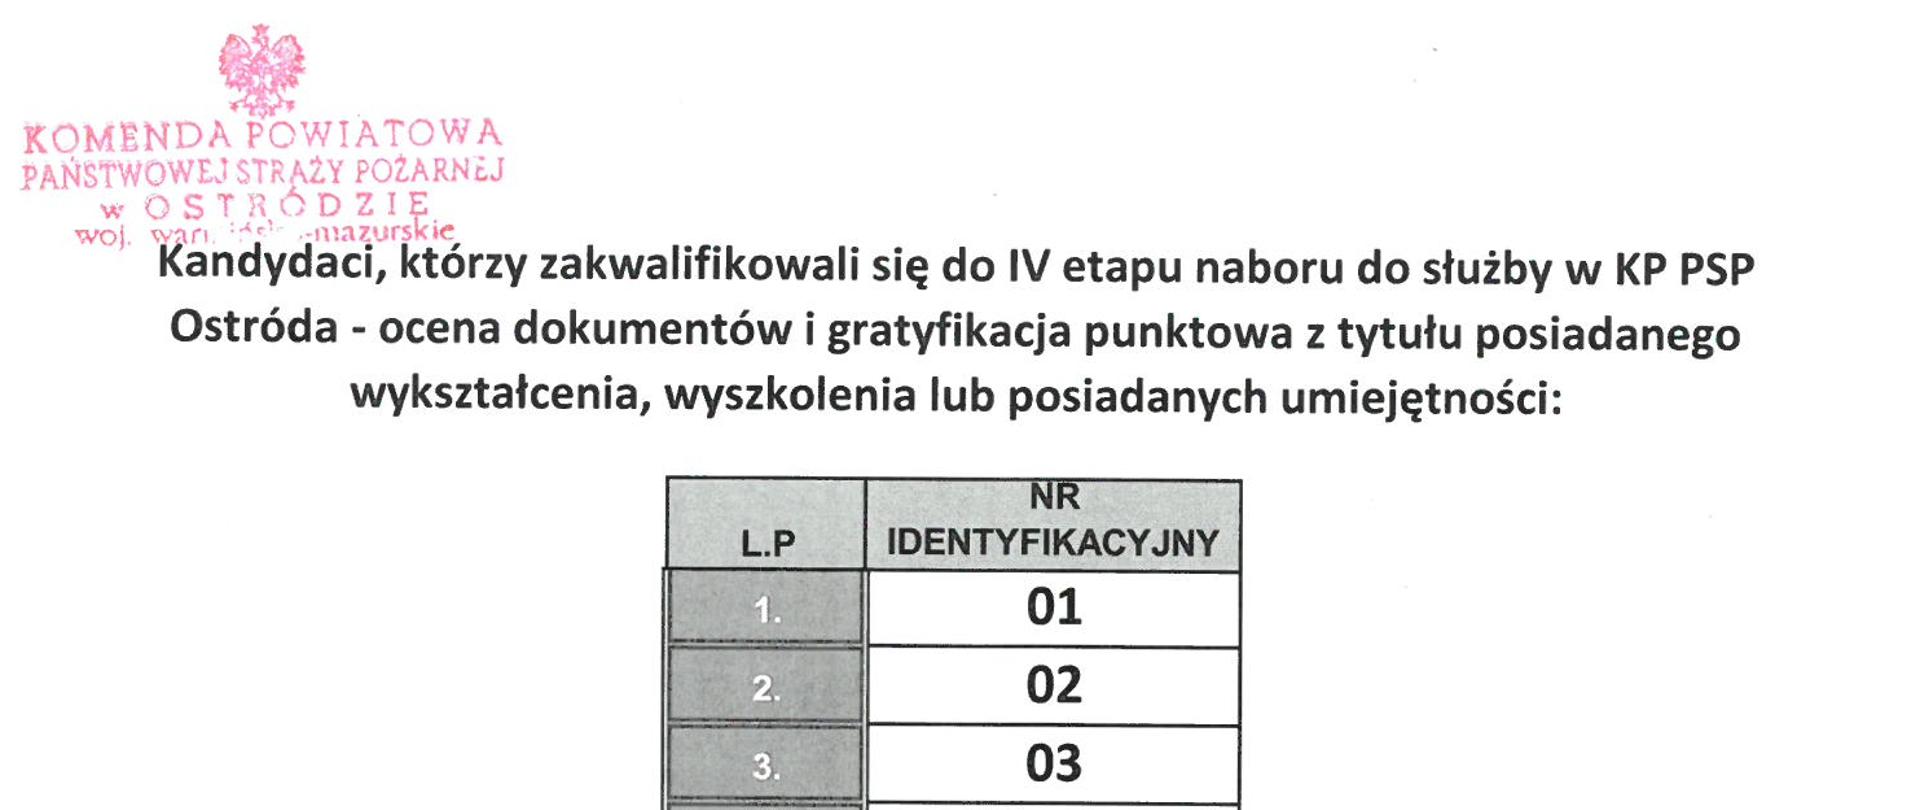 Wyniki naboru do służby oraz lista osób zakwalifikowanych do IV etapu. 